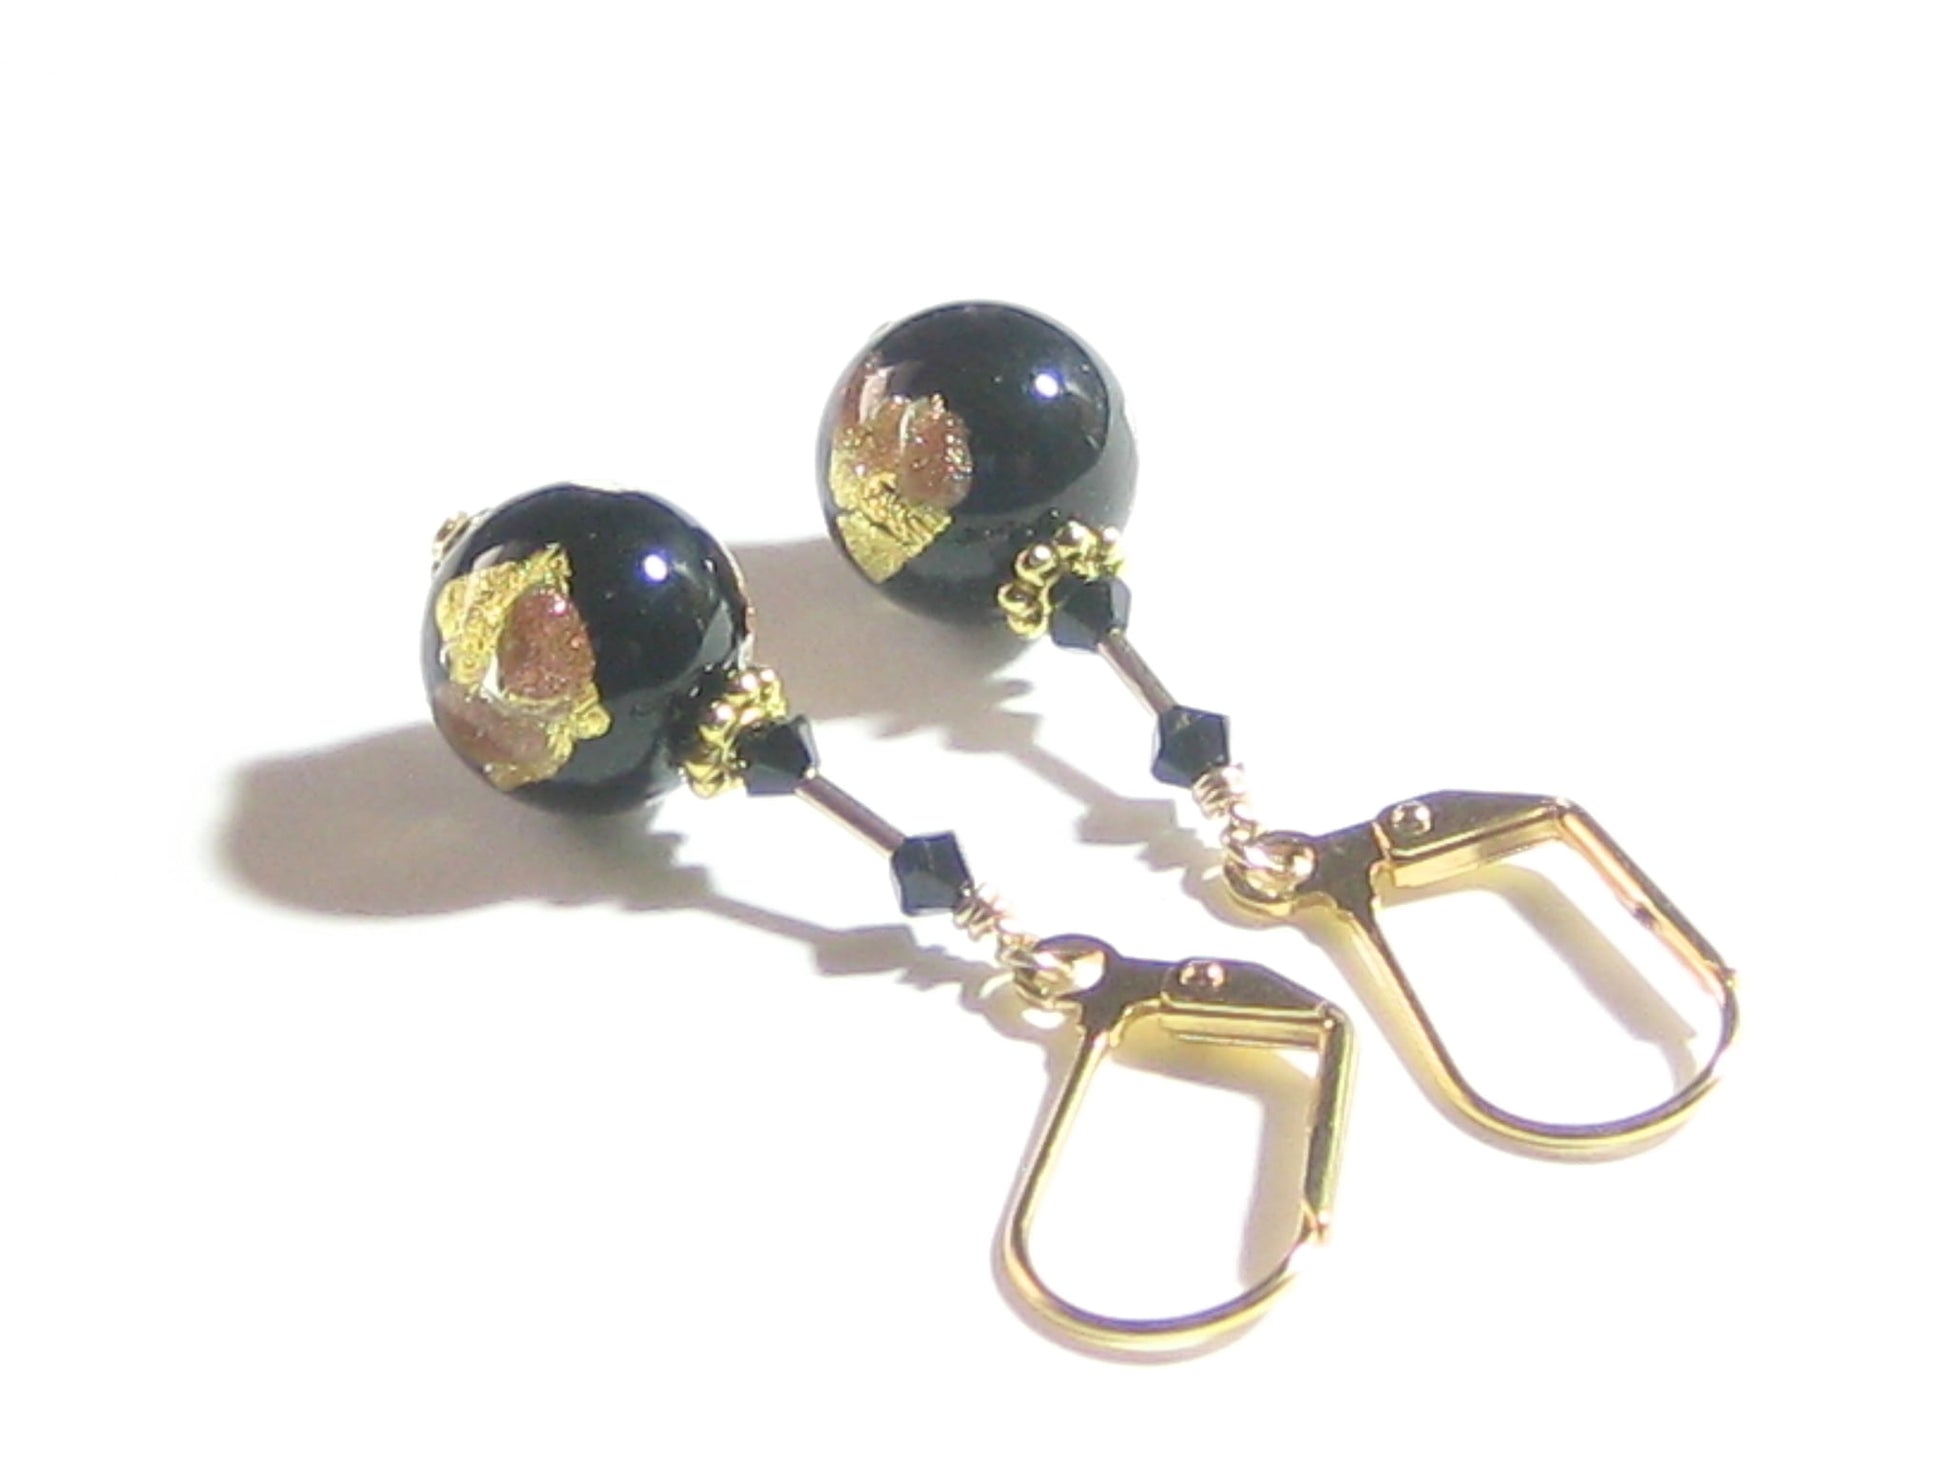 Venetian Glass Black Silver Gold Earrings, Italian Glass Jewelry - JKC Murano